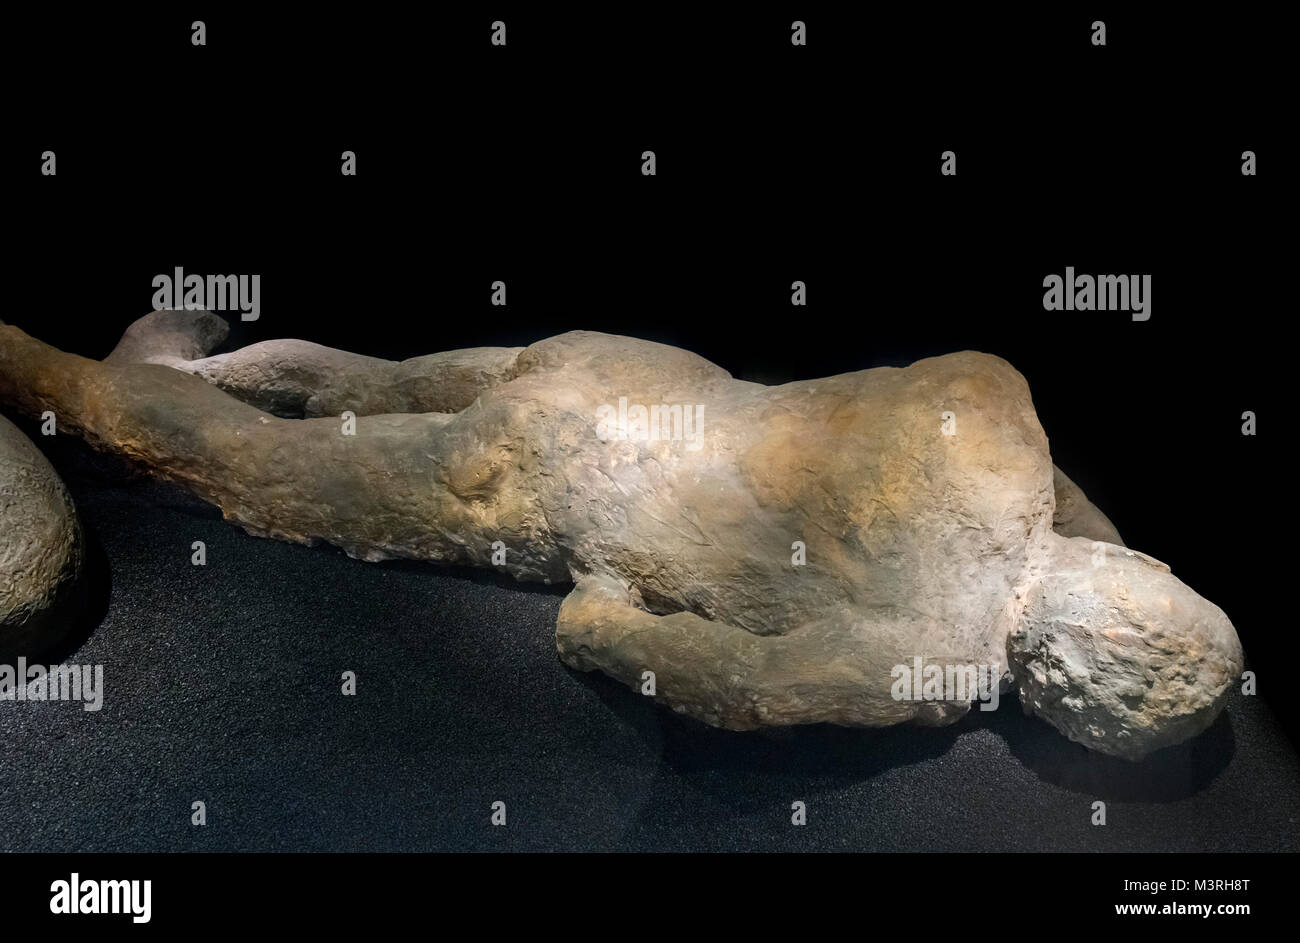 Elenco de el cuerpo de una víctima de Pompeya después de la erupción del Monte Vesubio en el año 79 DC, Museo de Historia Natural de Londres, Inglaterra, Reino Unido. Foto de stock